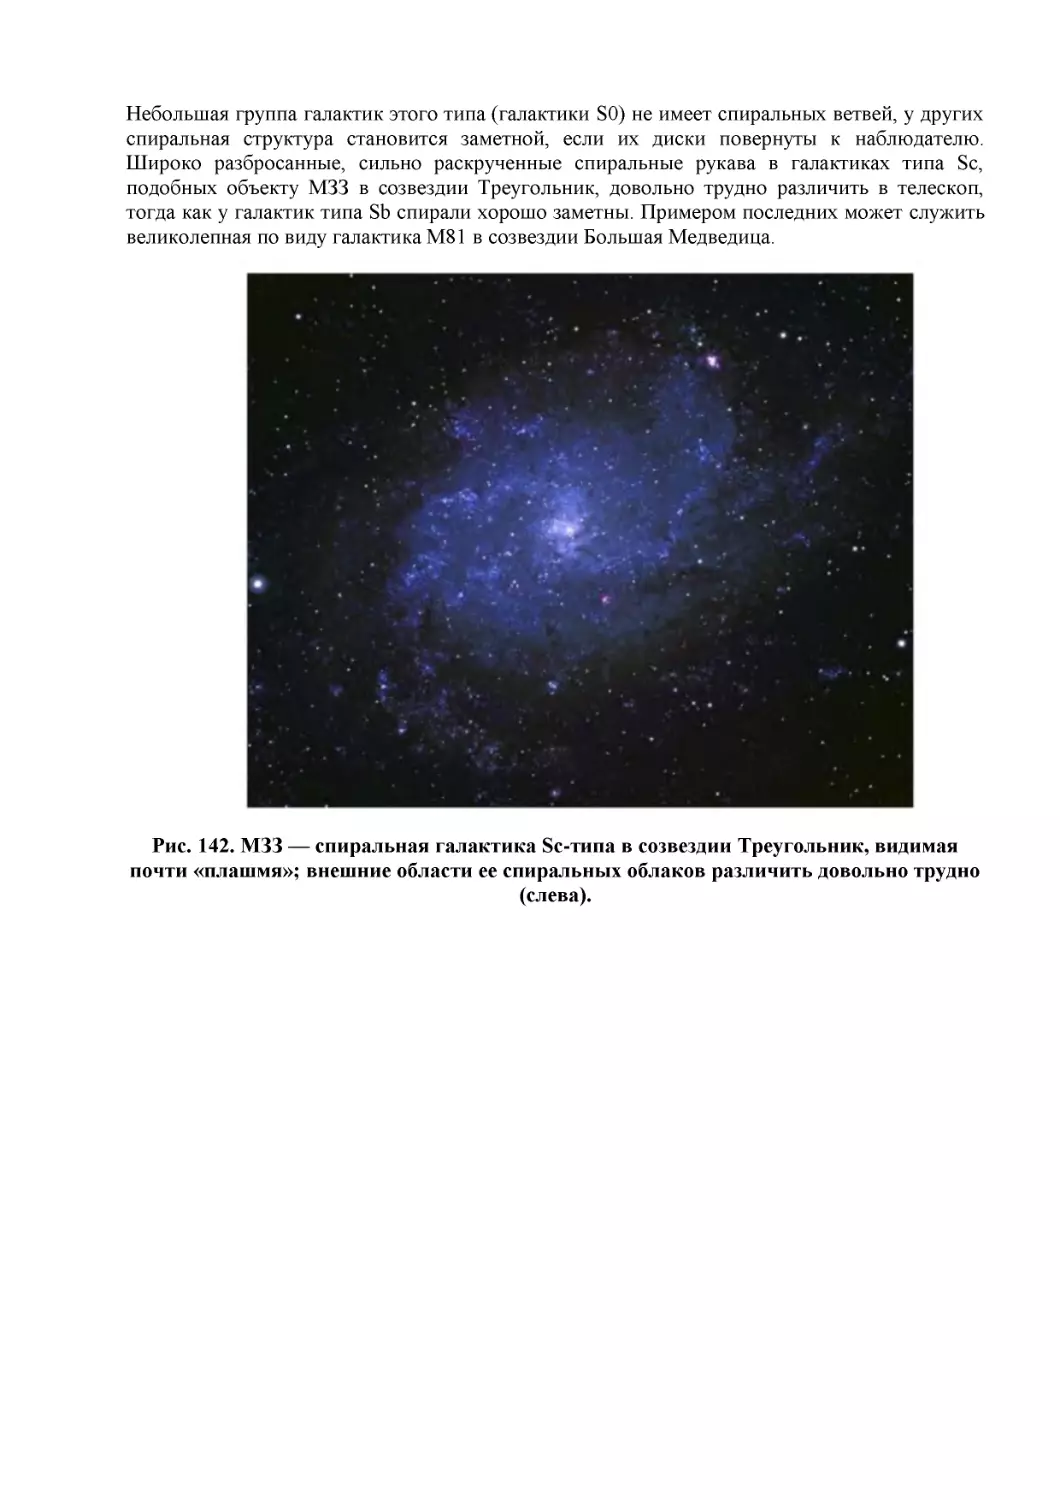 Рис. 142. МЗЗ — спиральная галактика Sc-типа в созвездии Треугольник, видимая почти «плашмя»; внешние области ее спиральных облаков различить довольно трудно (слева).